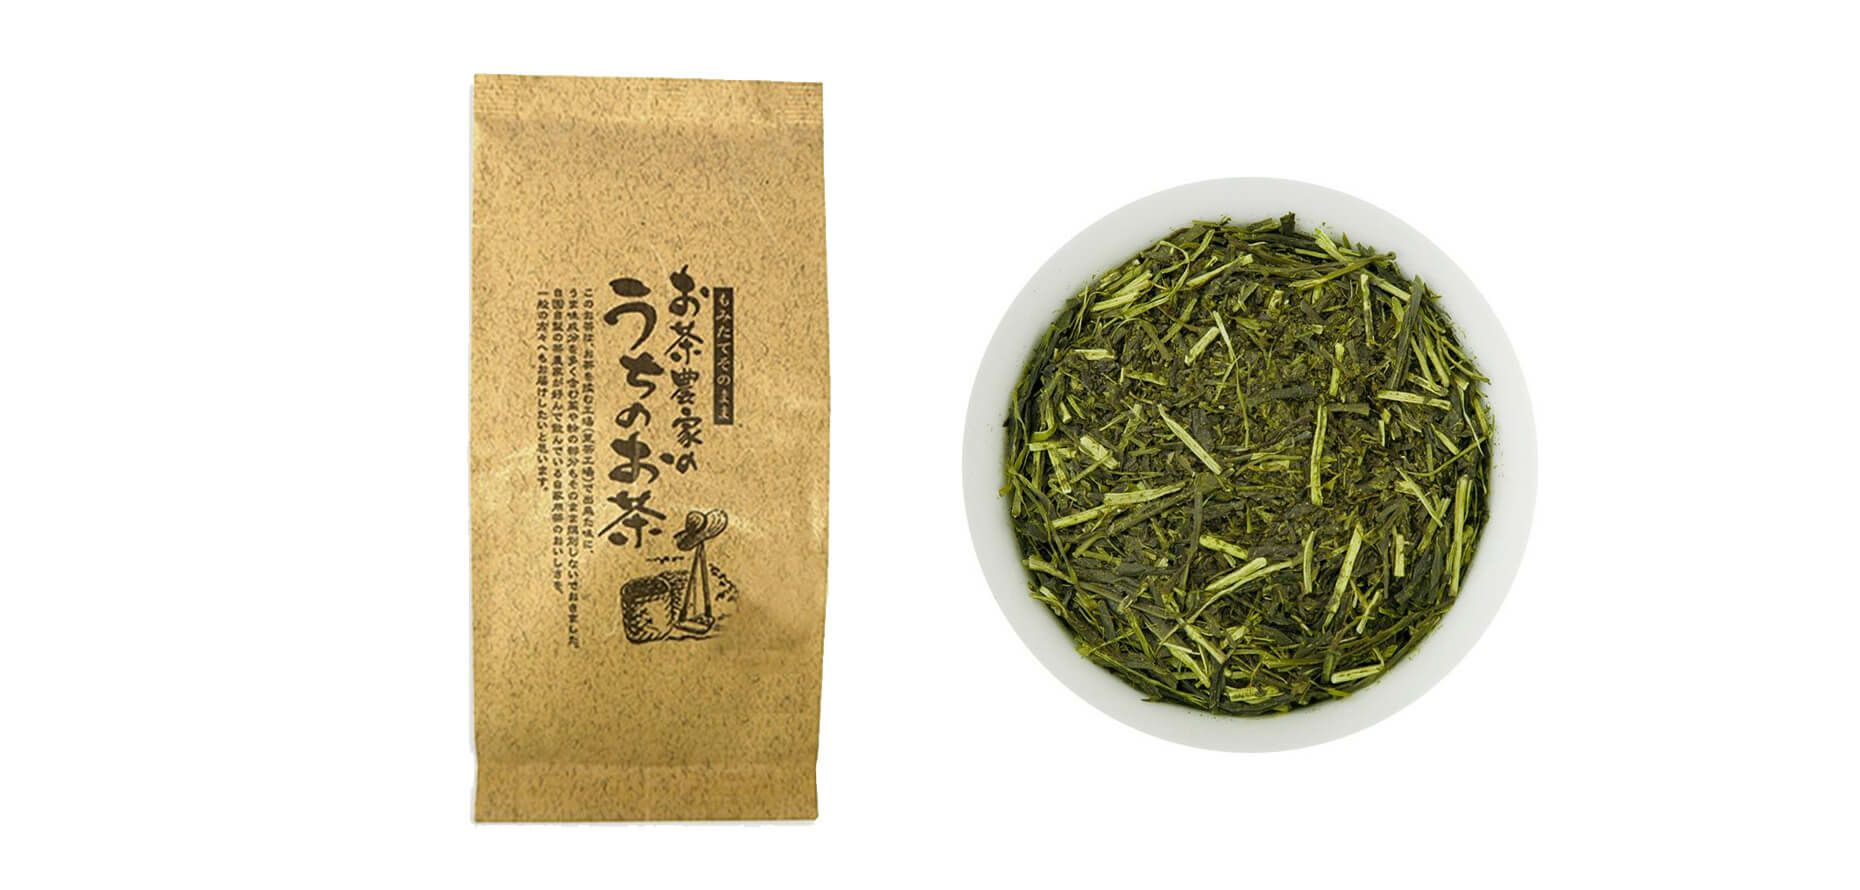 【静岡・掛川茶】 お茶農家のうちのお茶 150g